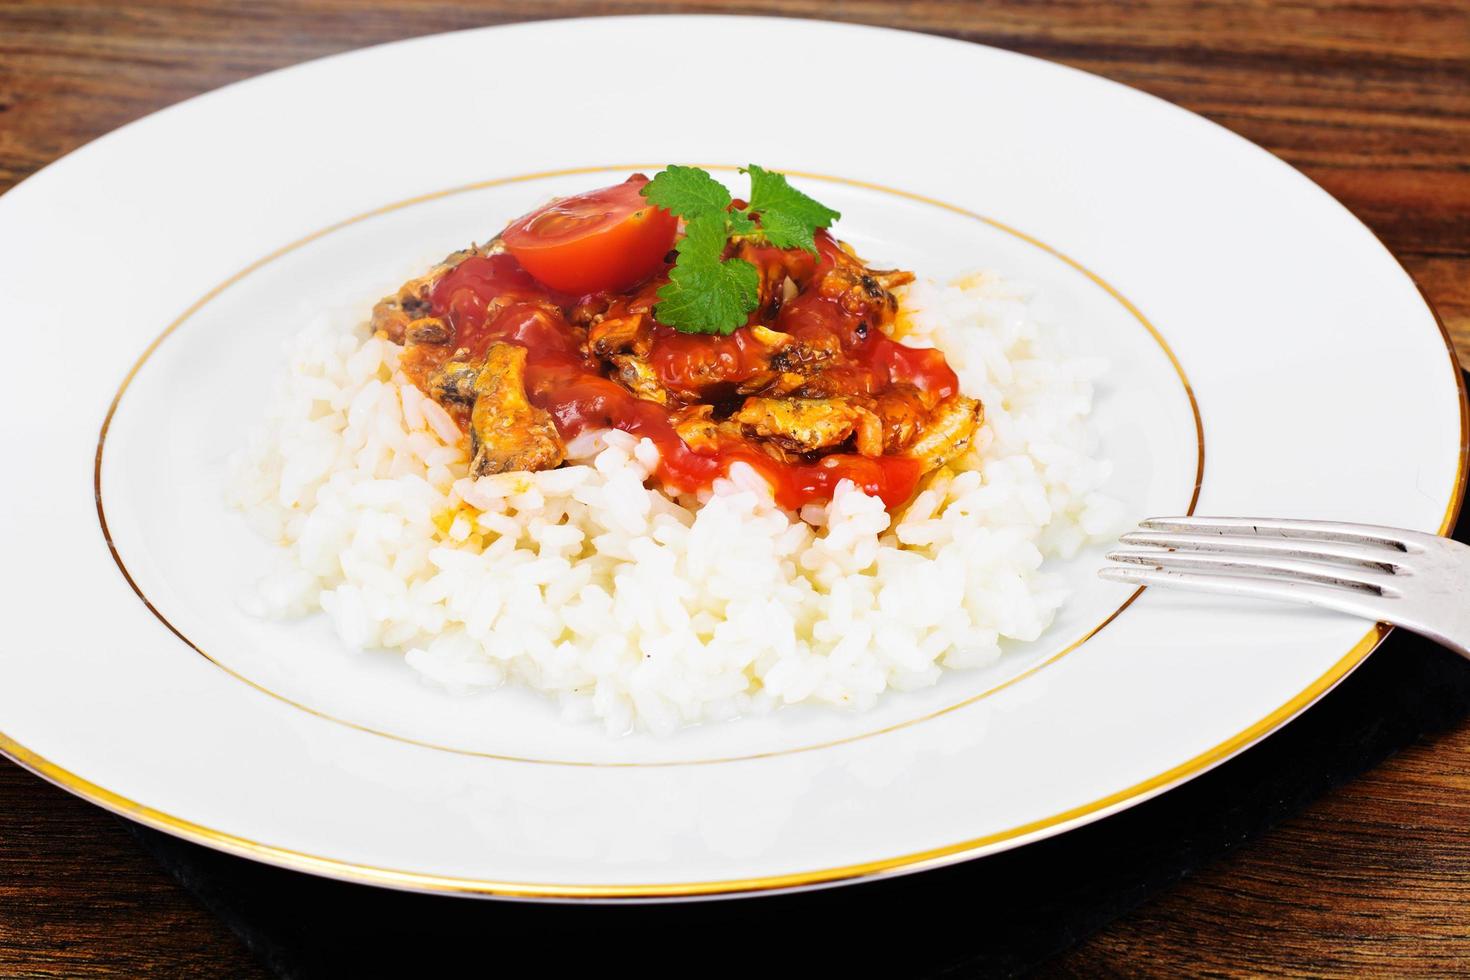 arroz com conserva de peixe ao molho de tomate foto